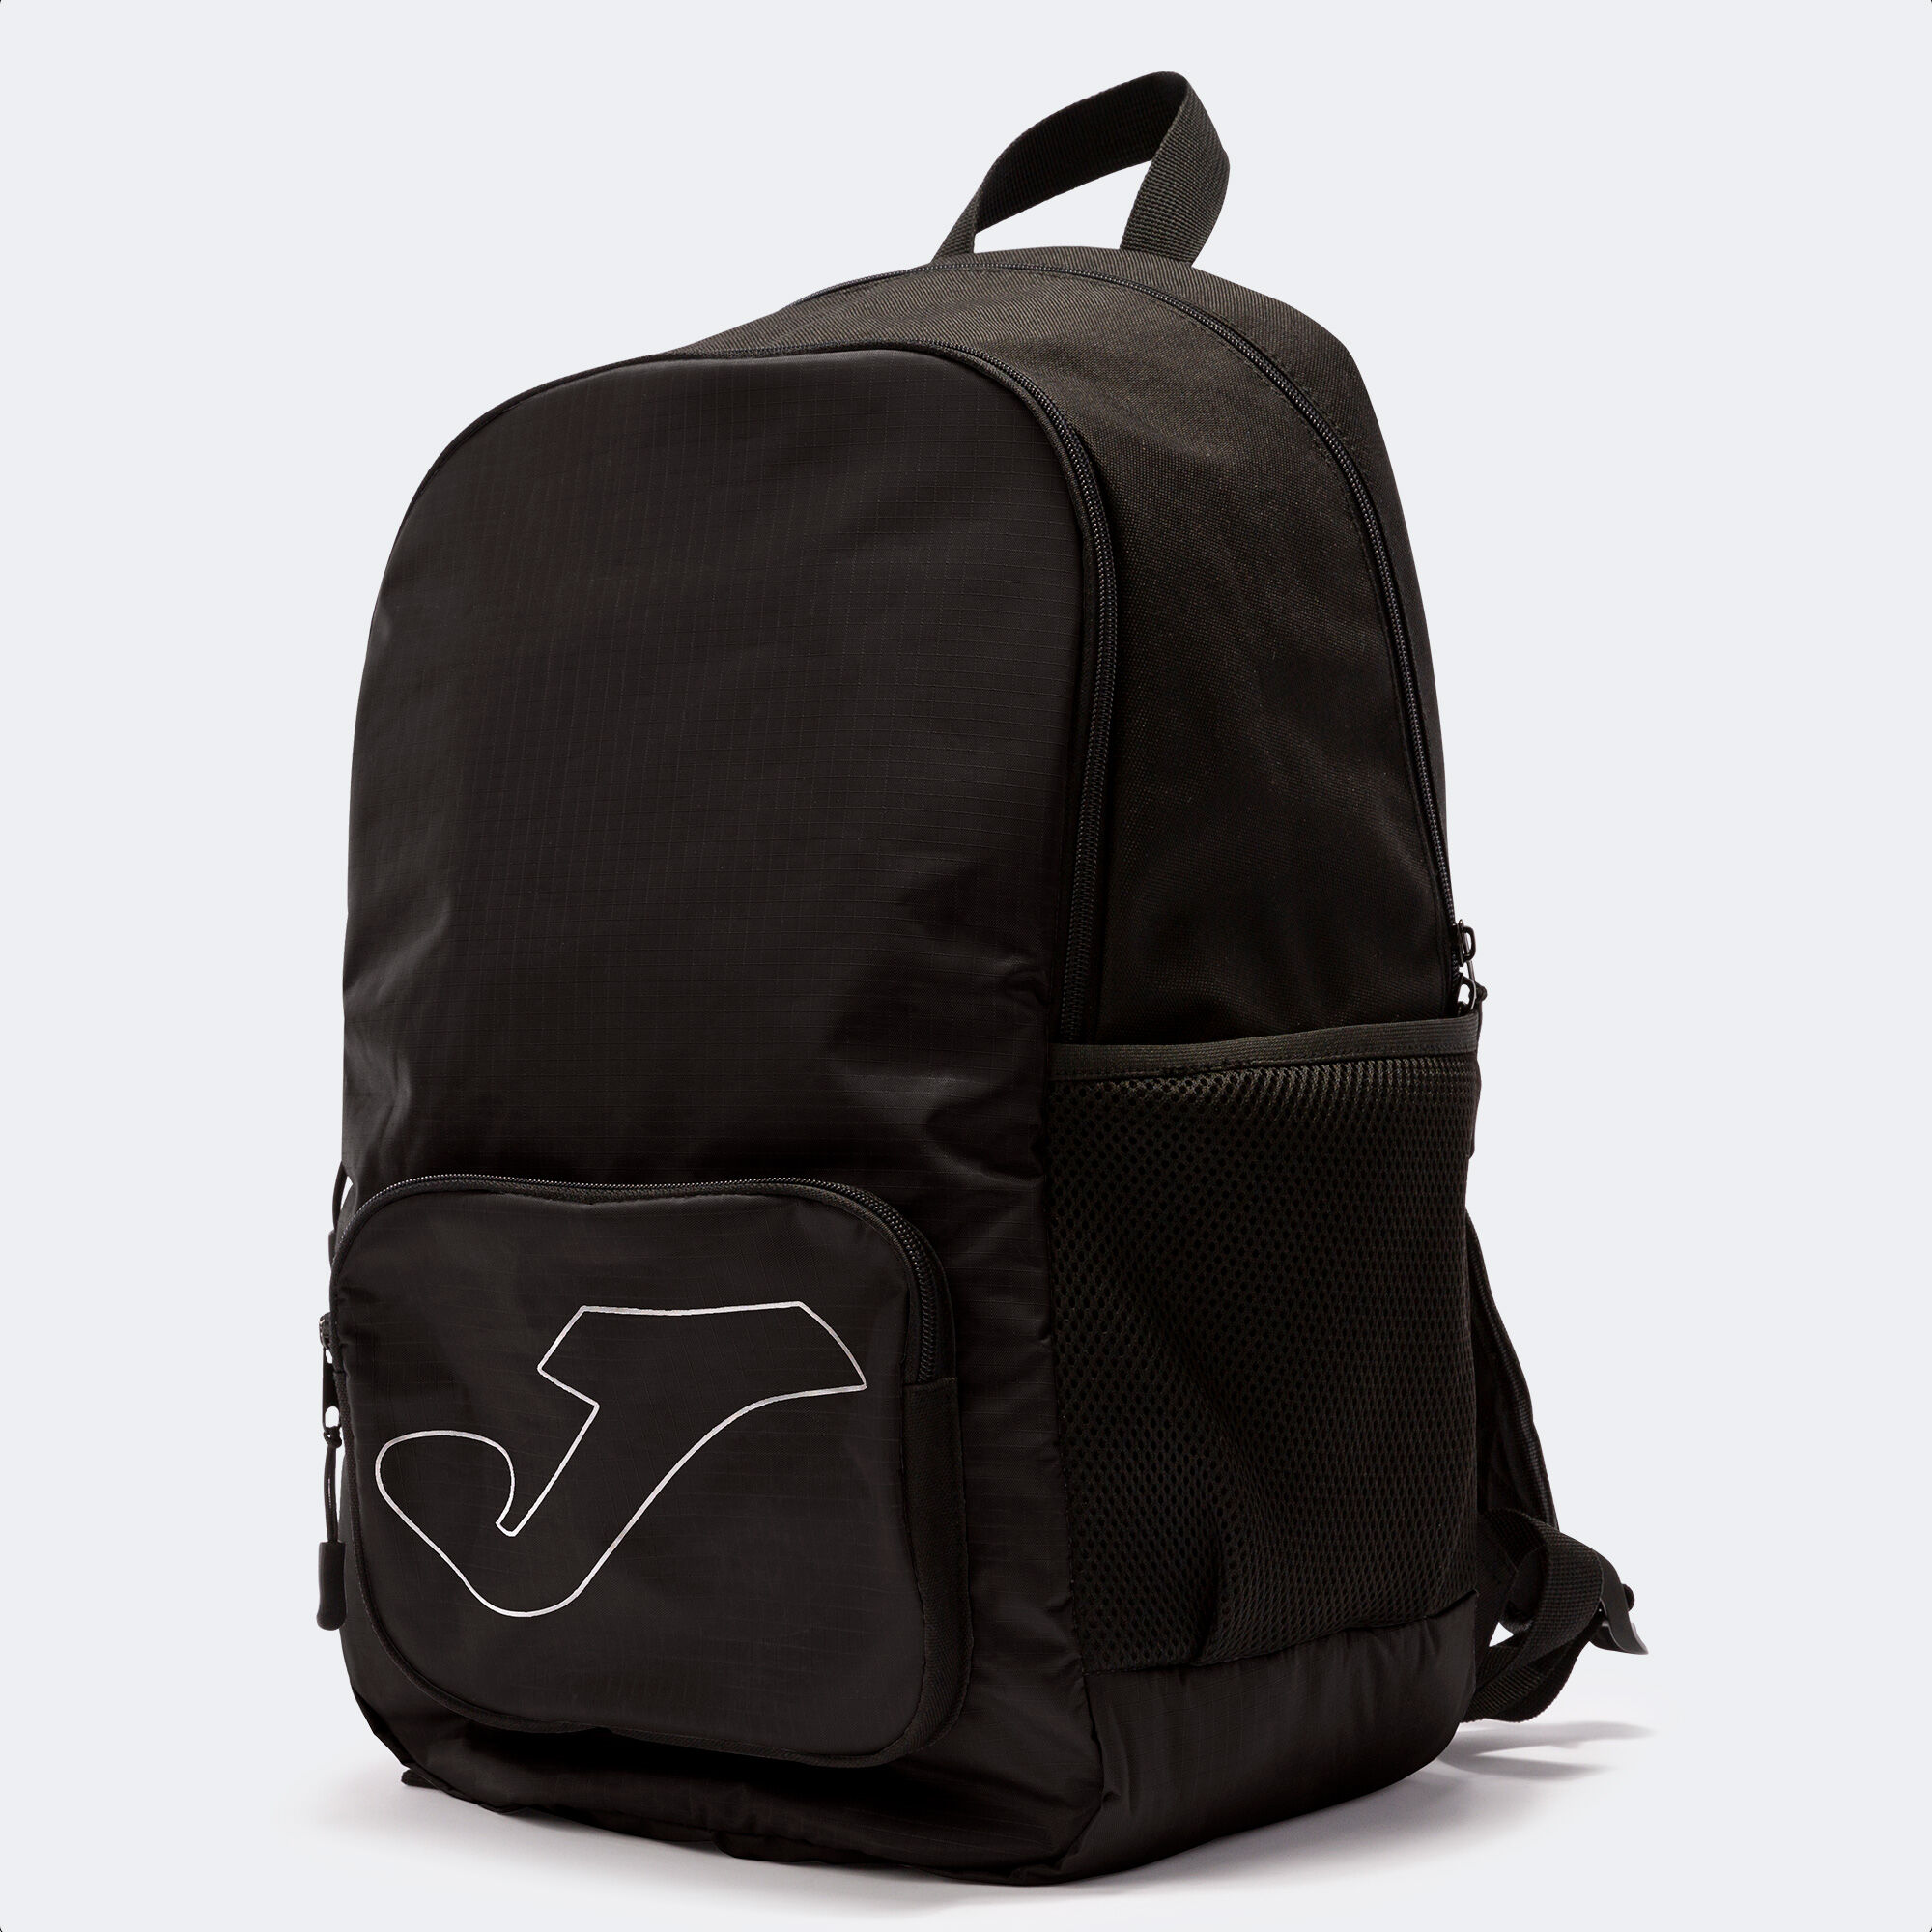 Backpack - shoe bag Academy black